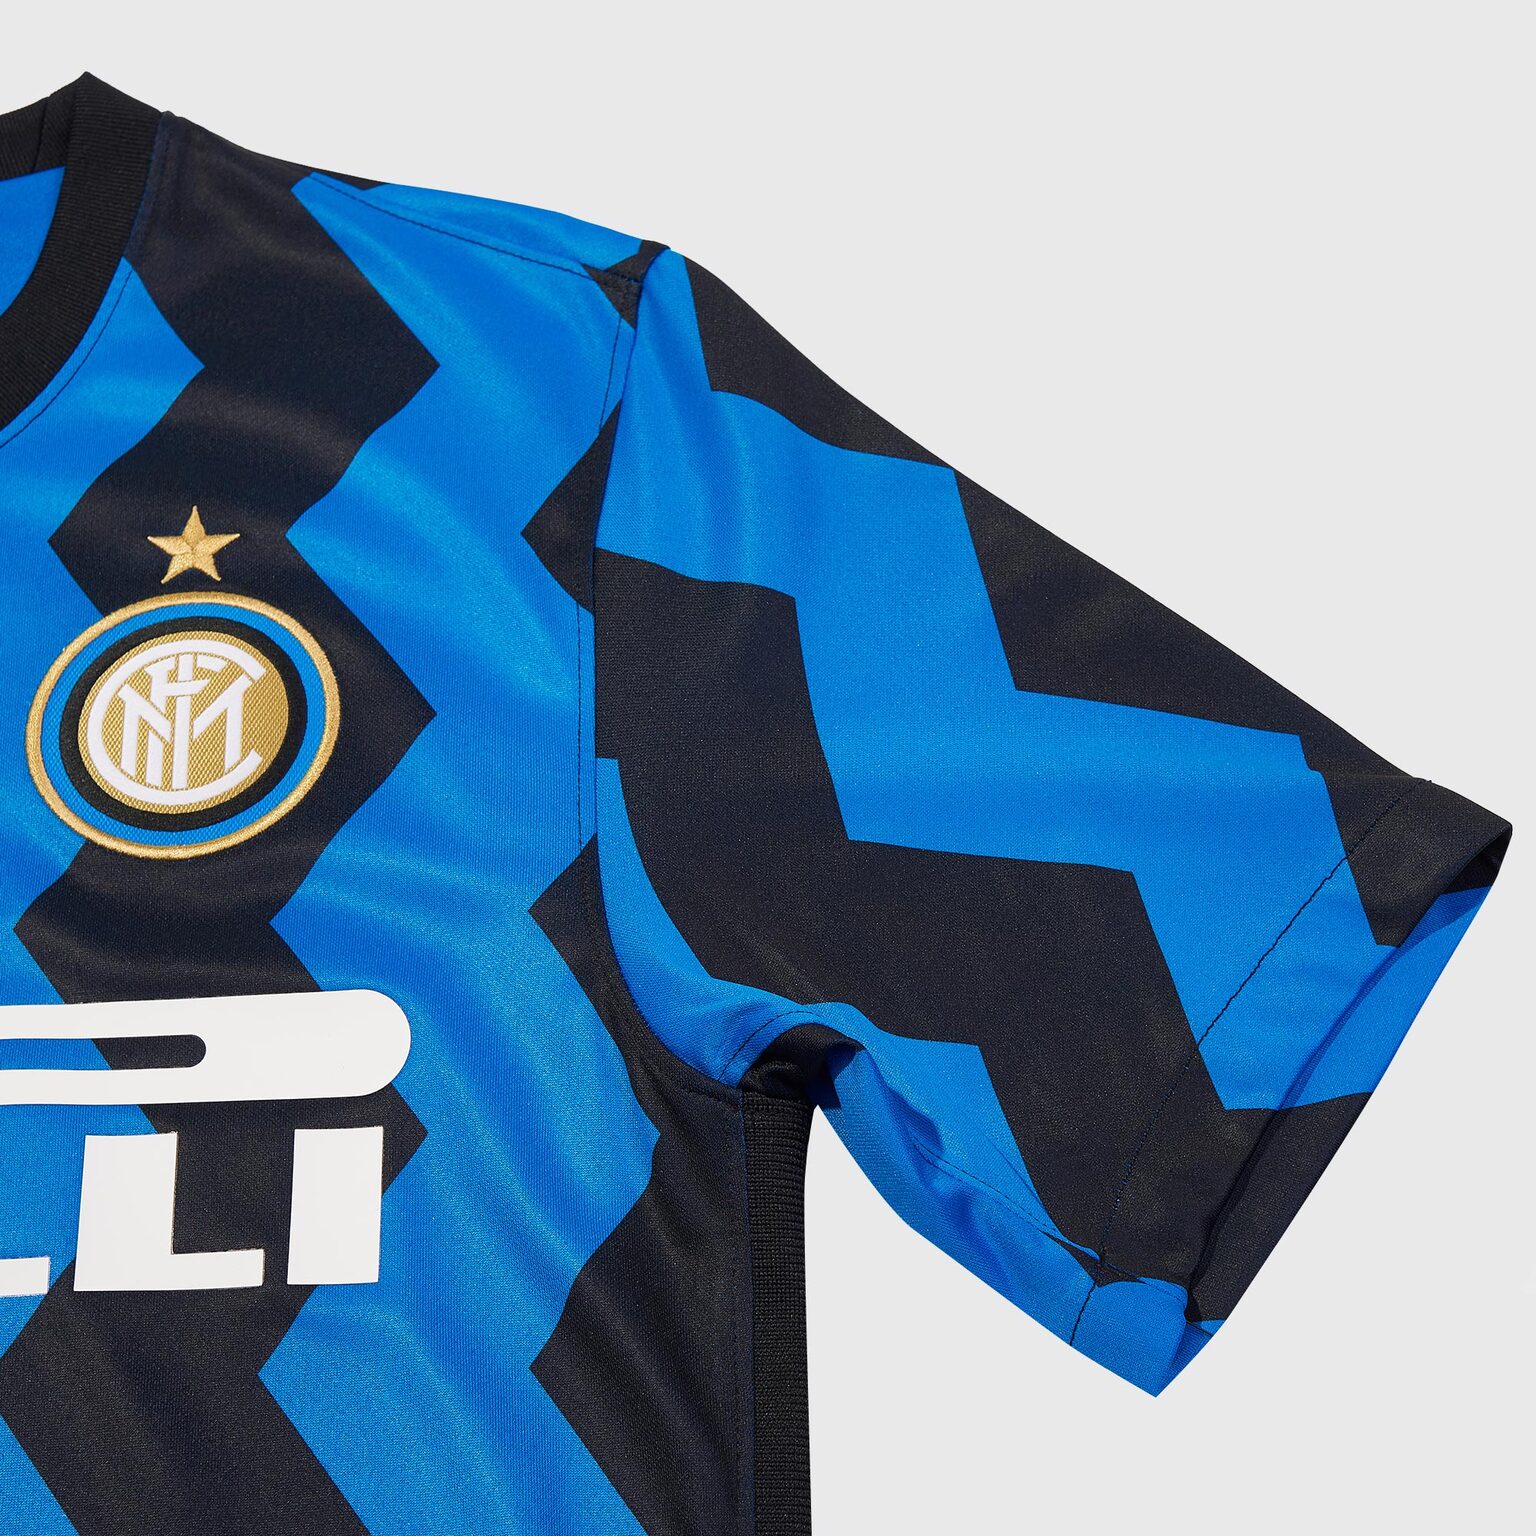 Футболка игровая домашняя Nike Inter сезон 2020/21